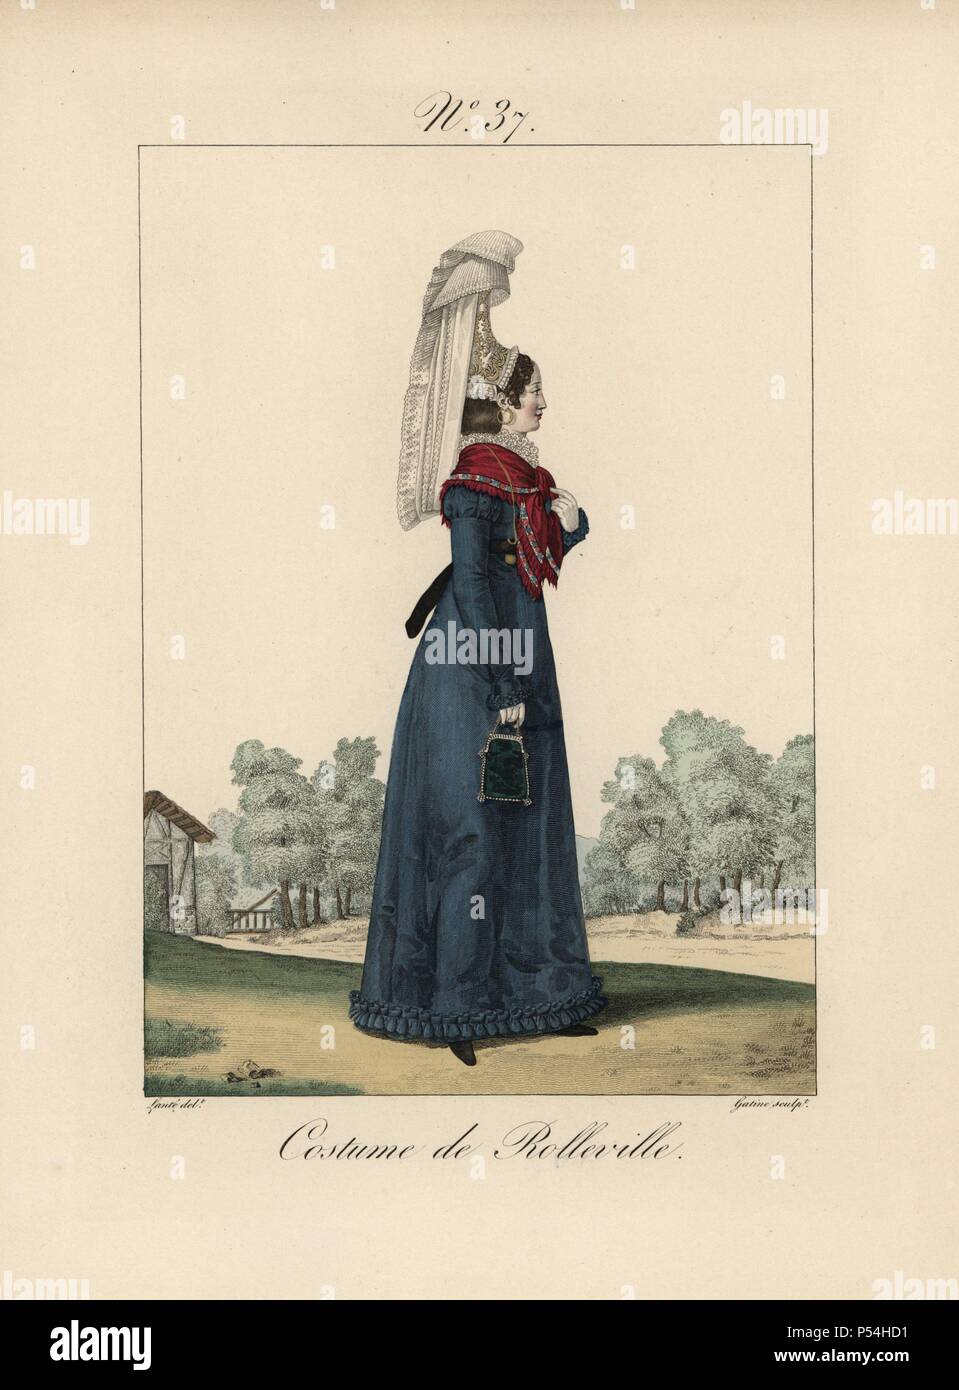 Frau in das Kostüm von Rolleville. Seitenansicht der hohen bavolet Motorhaube. Die Dekorationen auf der Vorderseite und fällt auf die CHIGNON sind genäht auf der Motorhaube. Handcolorierte mode Platte Abbildung von Benoit Pecheux gestochen von Gatine von louis-marie's Lante' Kostüme des femmes du Pays de Caux", 1827/1885. Mit ihren hohen Elsässischen spitze Hüte, die Frauen von Caux und der Normandie waren berühmt für die Eleganz und Stil. Stockfoto